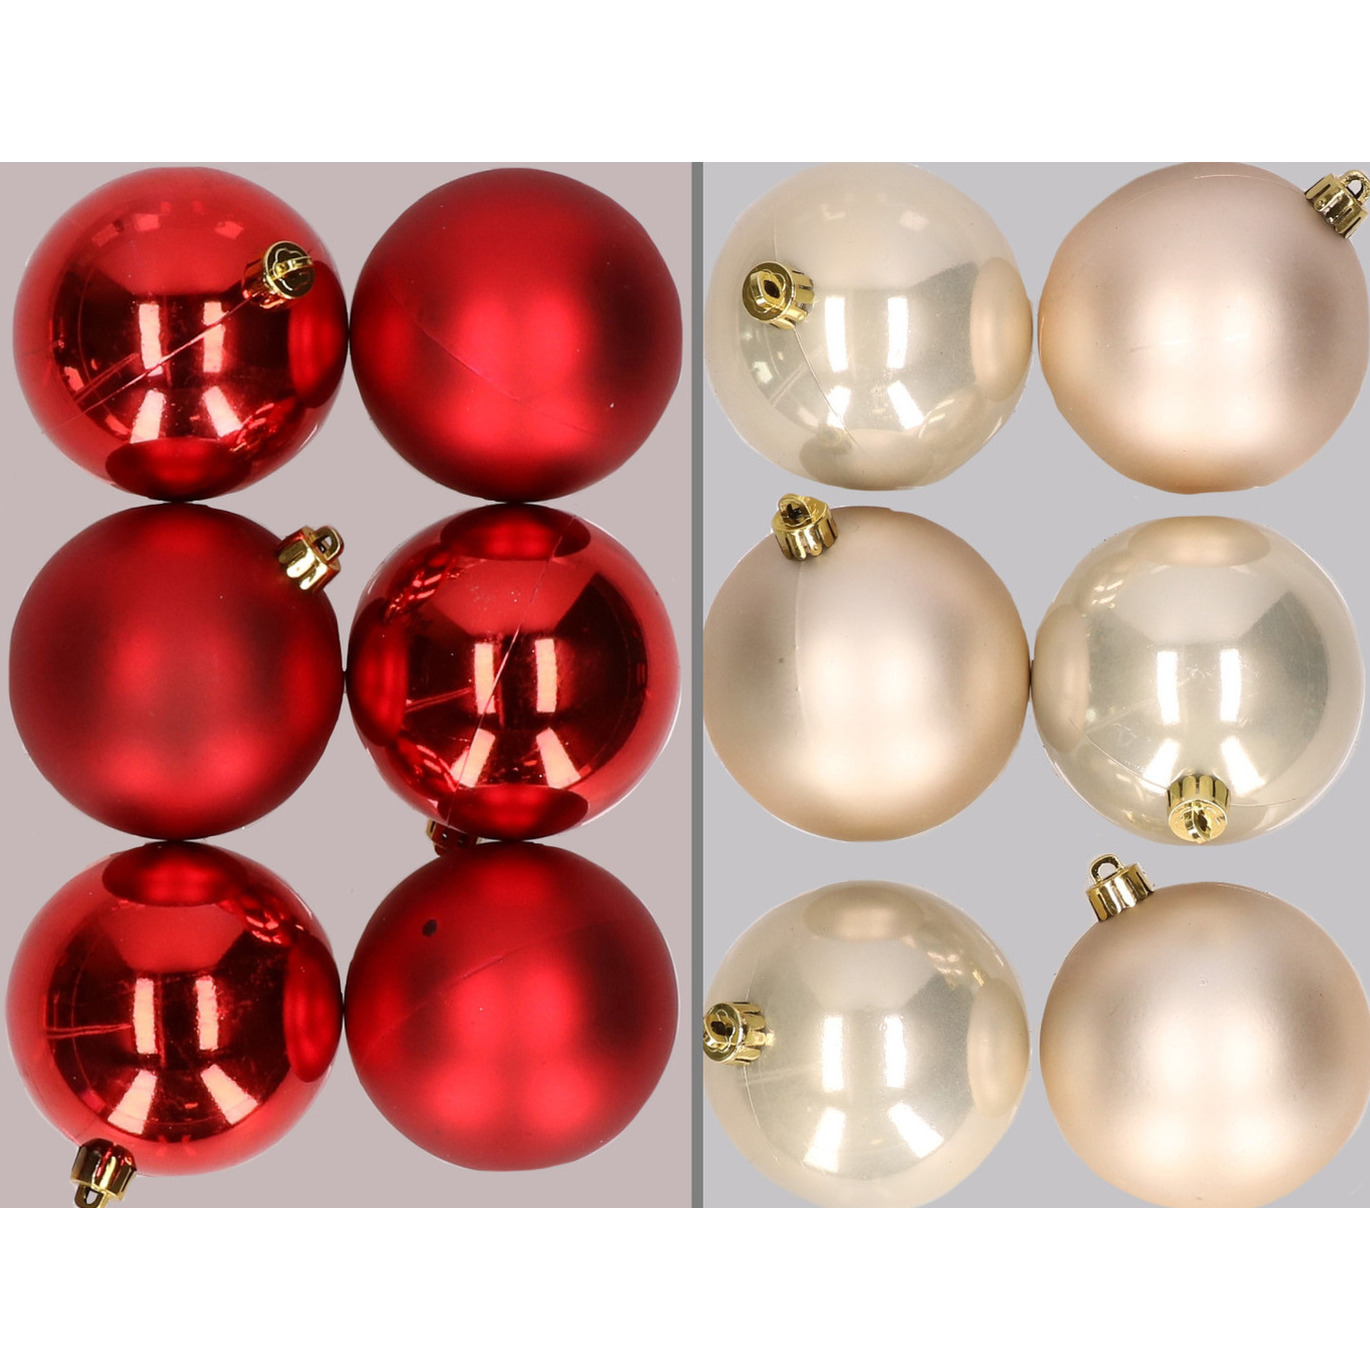 12x stuks kunststof kerstballen mix van rood en champagne 8 cm